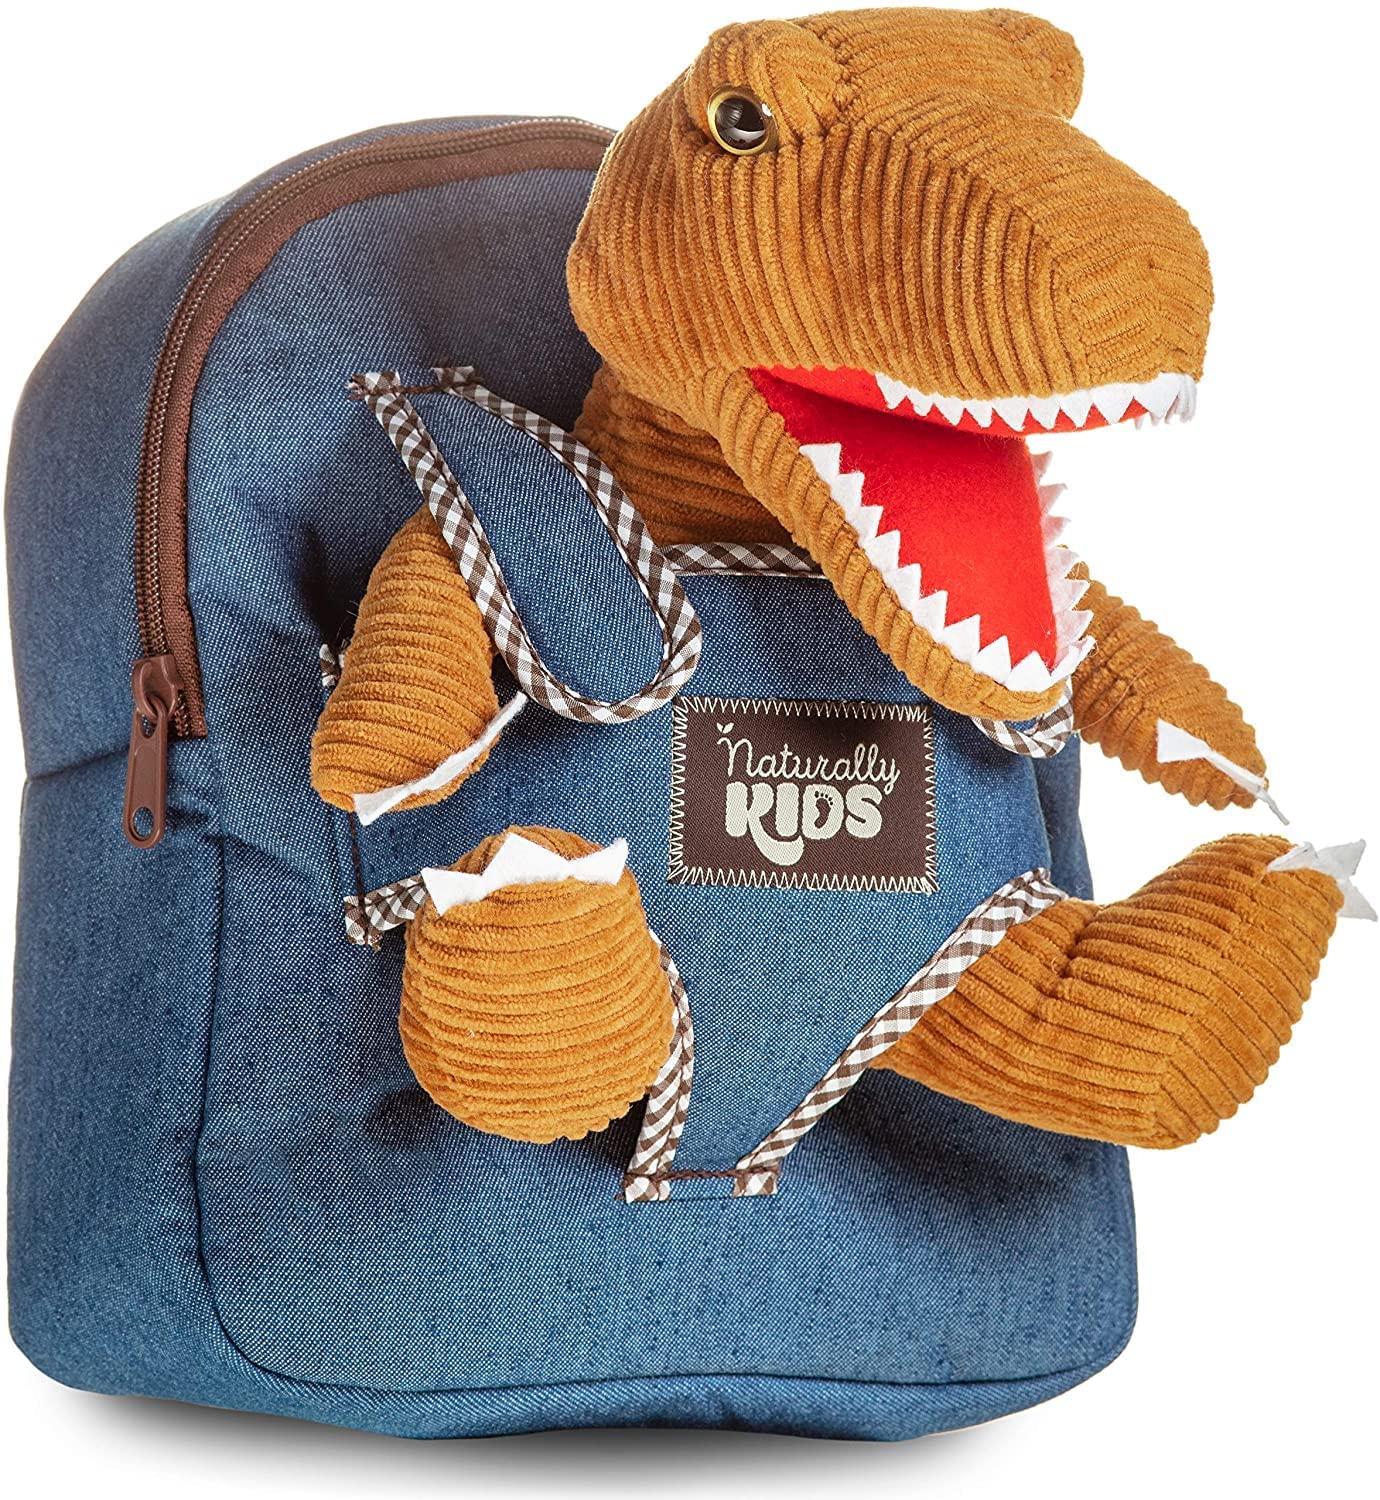 Naturally KIDS Dinosaur Plush Mini Backpack Gift For Boys